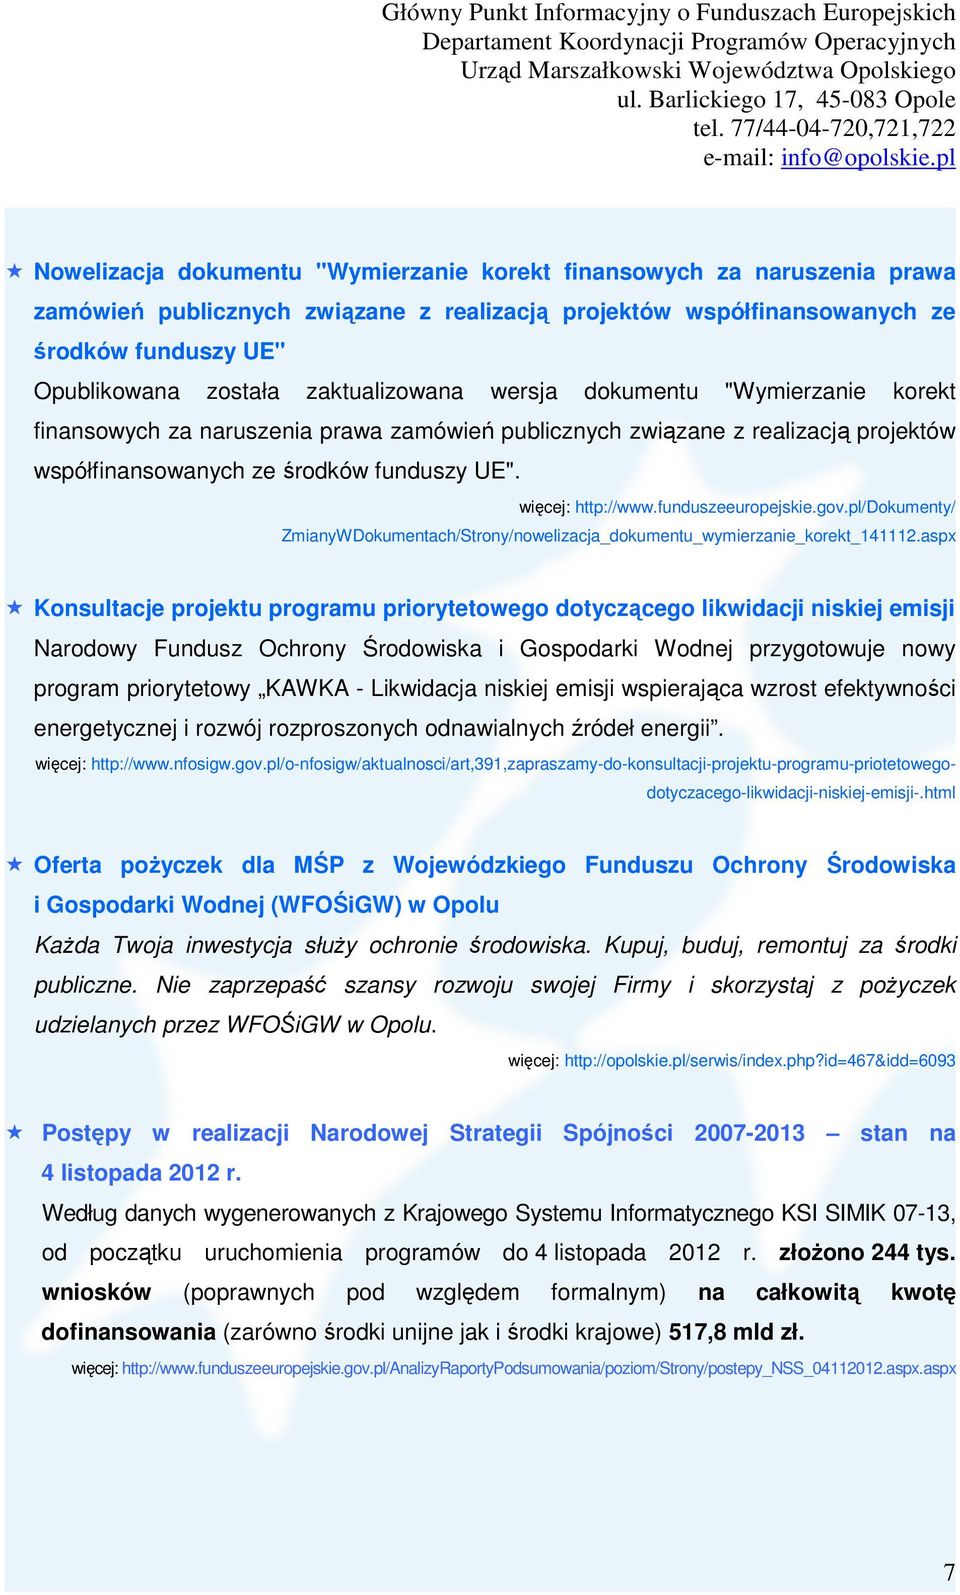 funduszeeuropejskie.gov.pl/dokumenty/ ZmianyWDokumentach/Strony/nowelizacja_dokumentu_wymierzanie_korekt_141112.